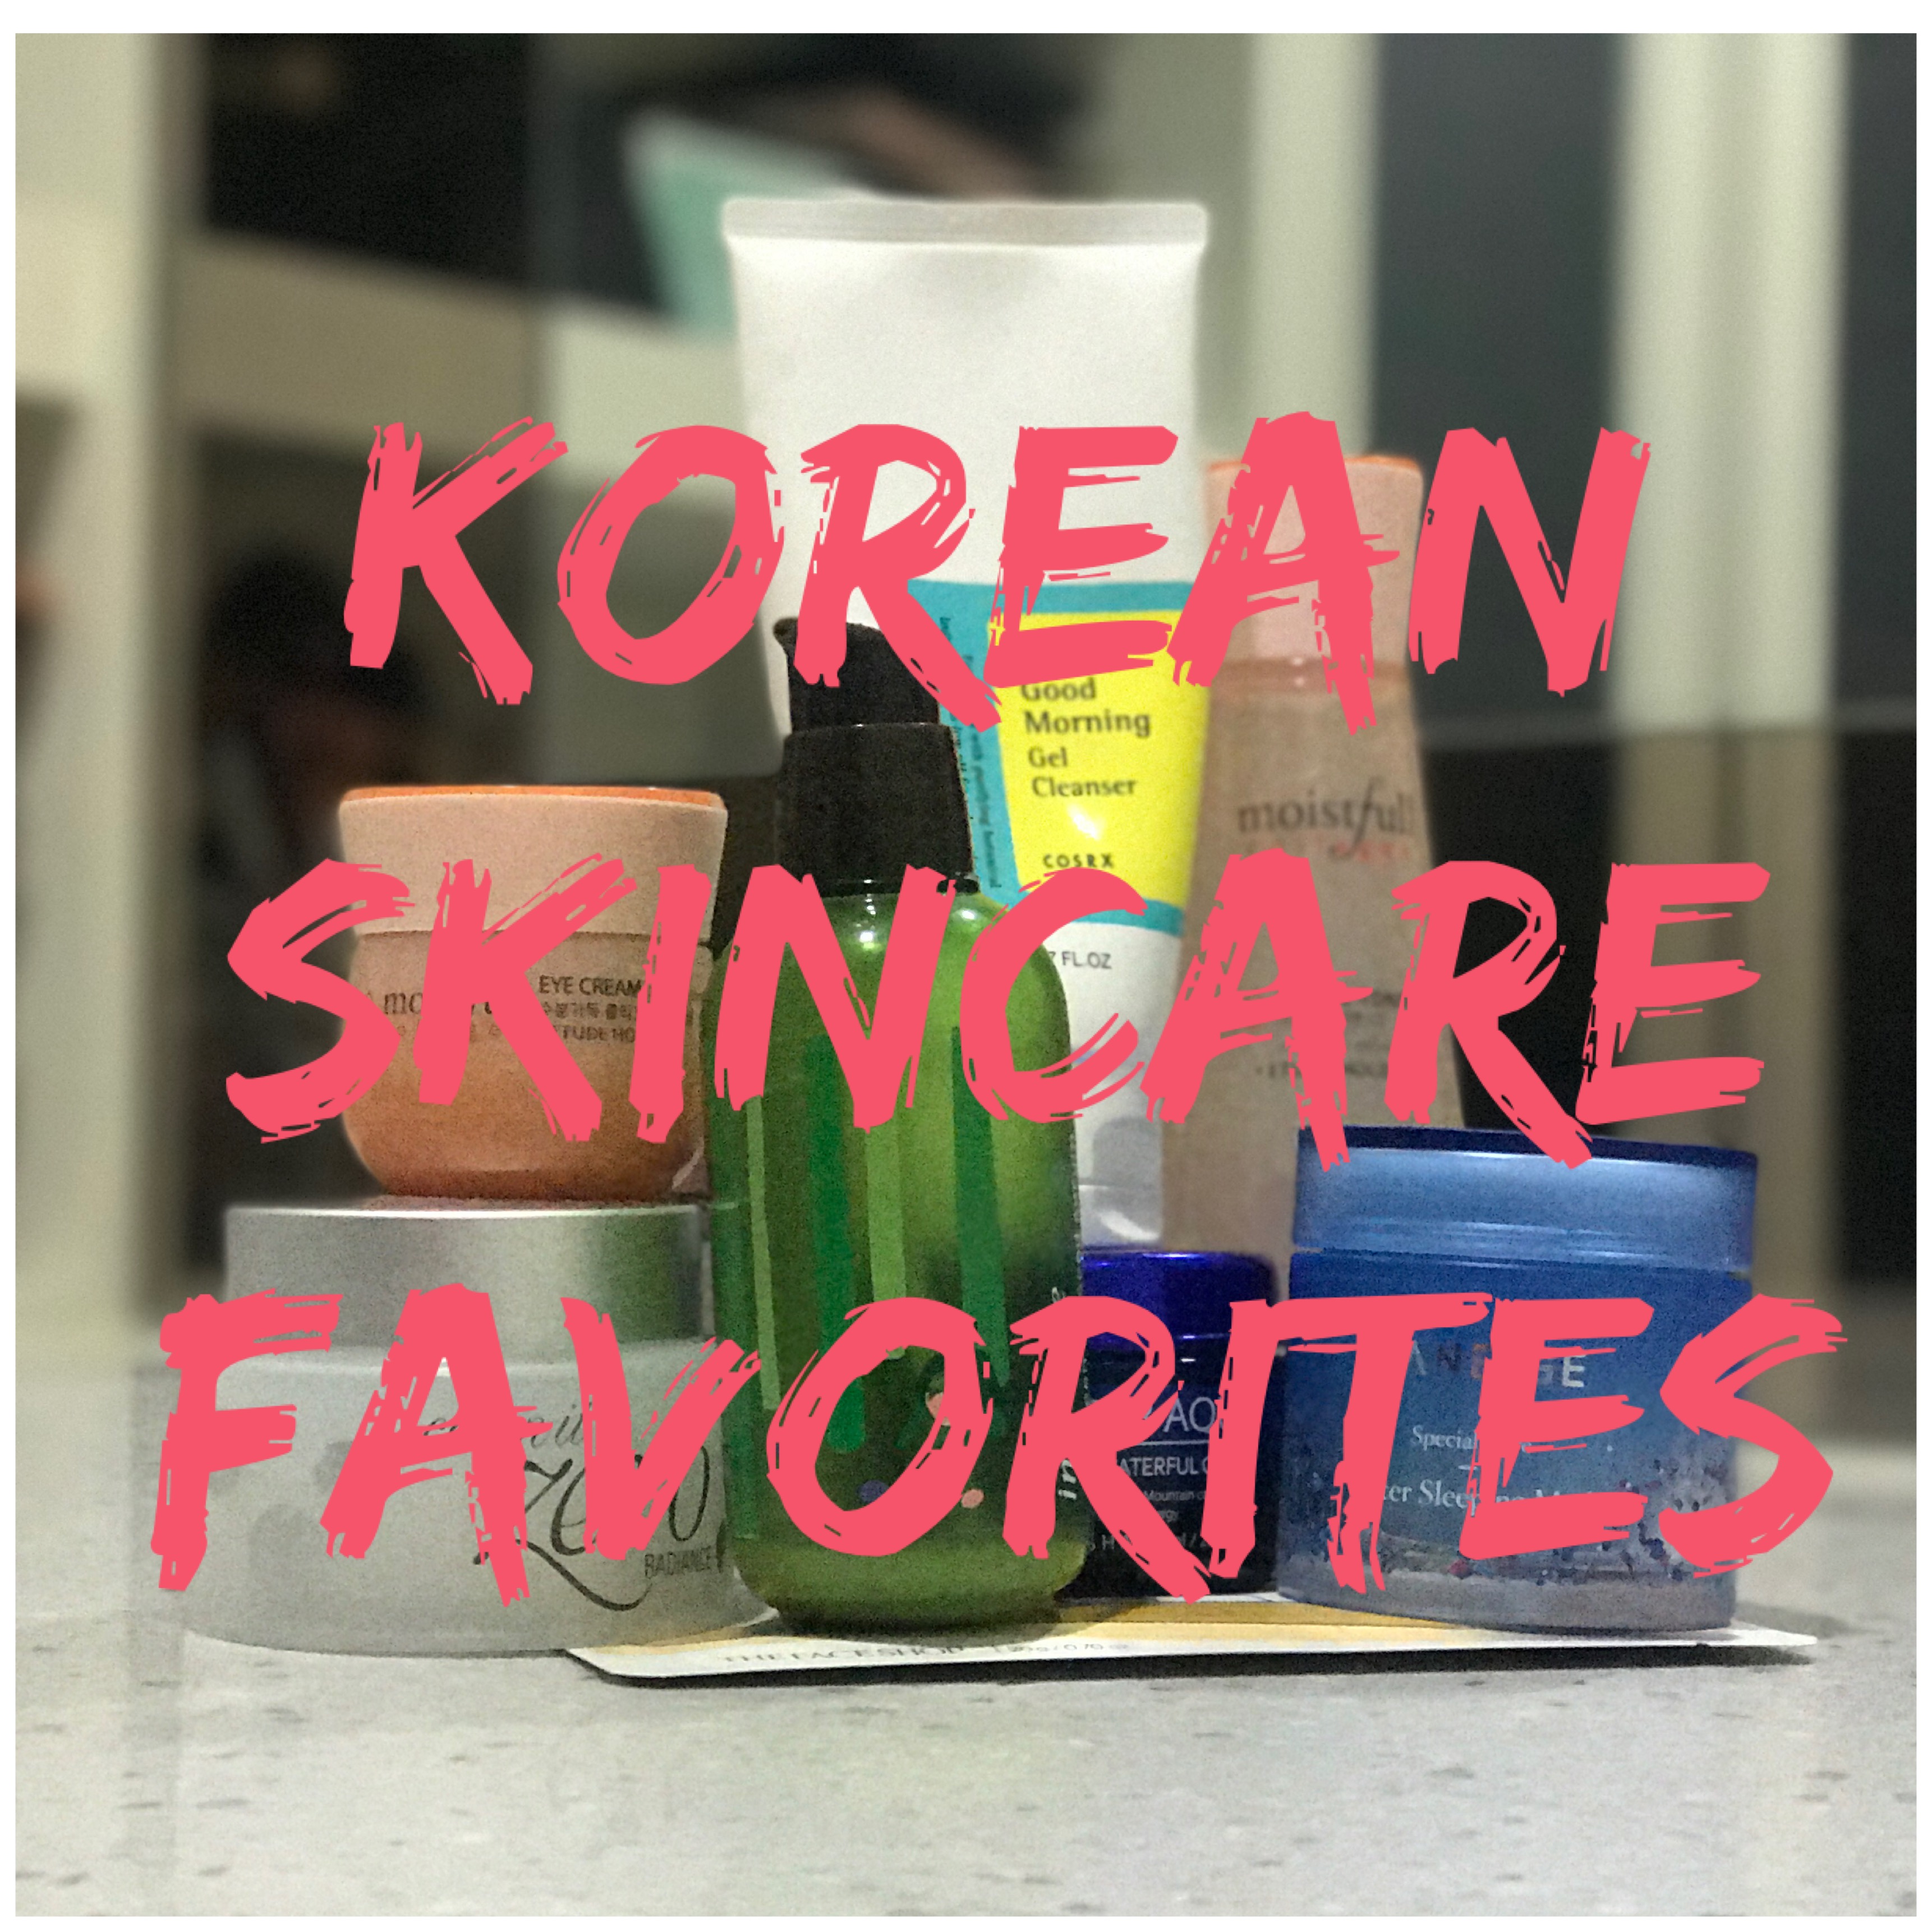 Korean Skincare Favorites